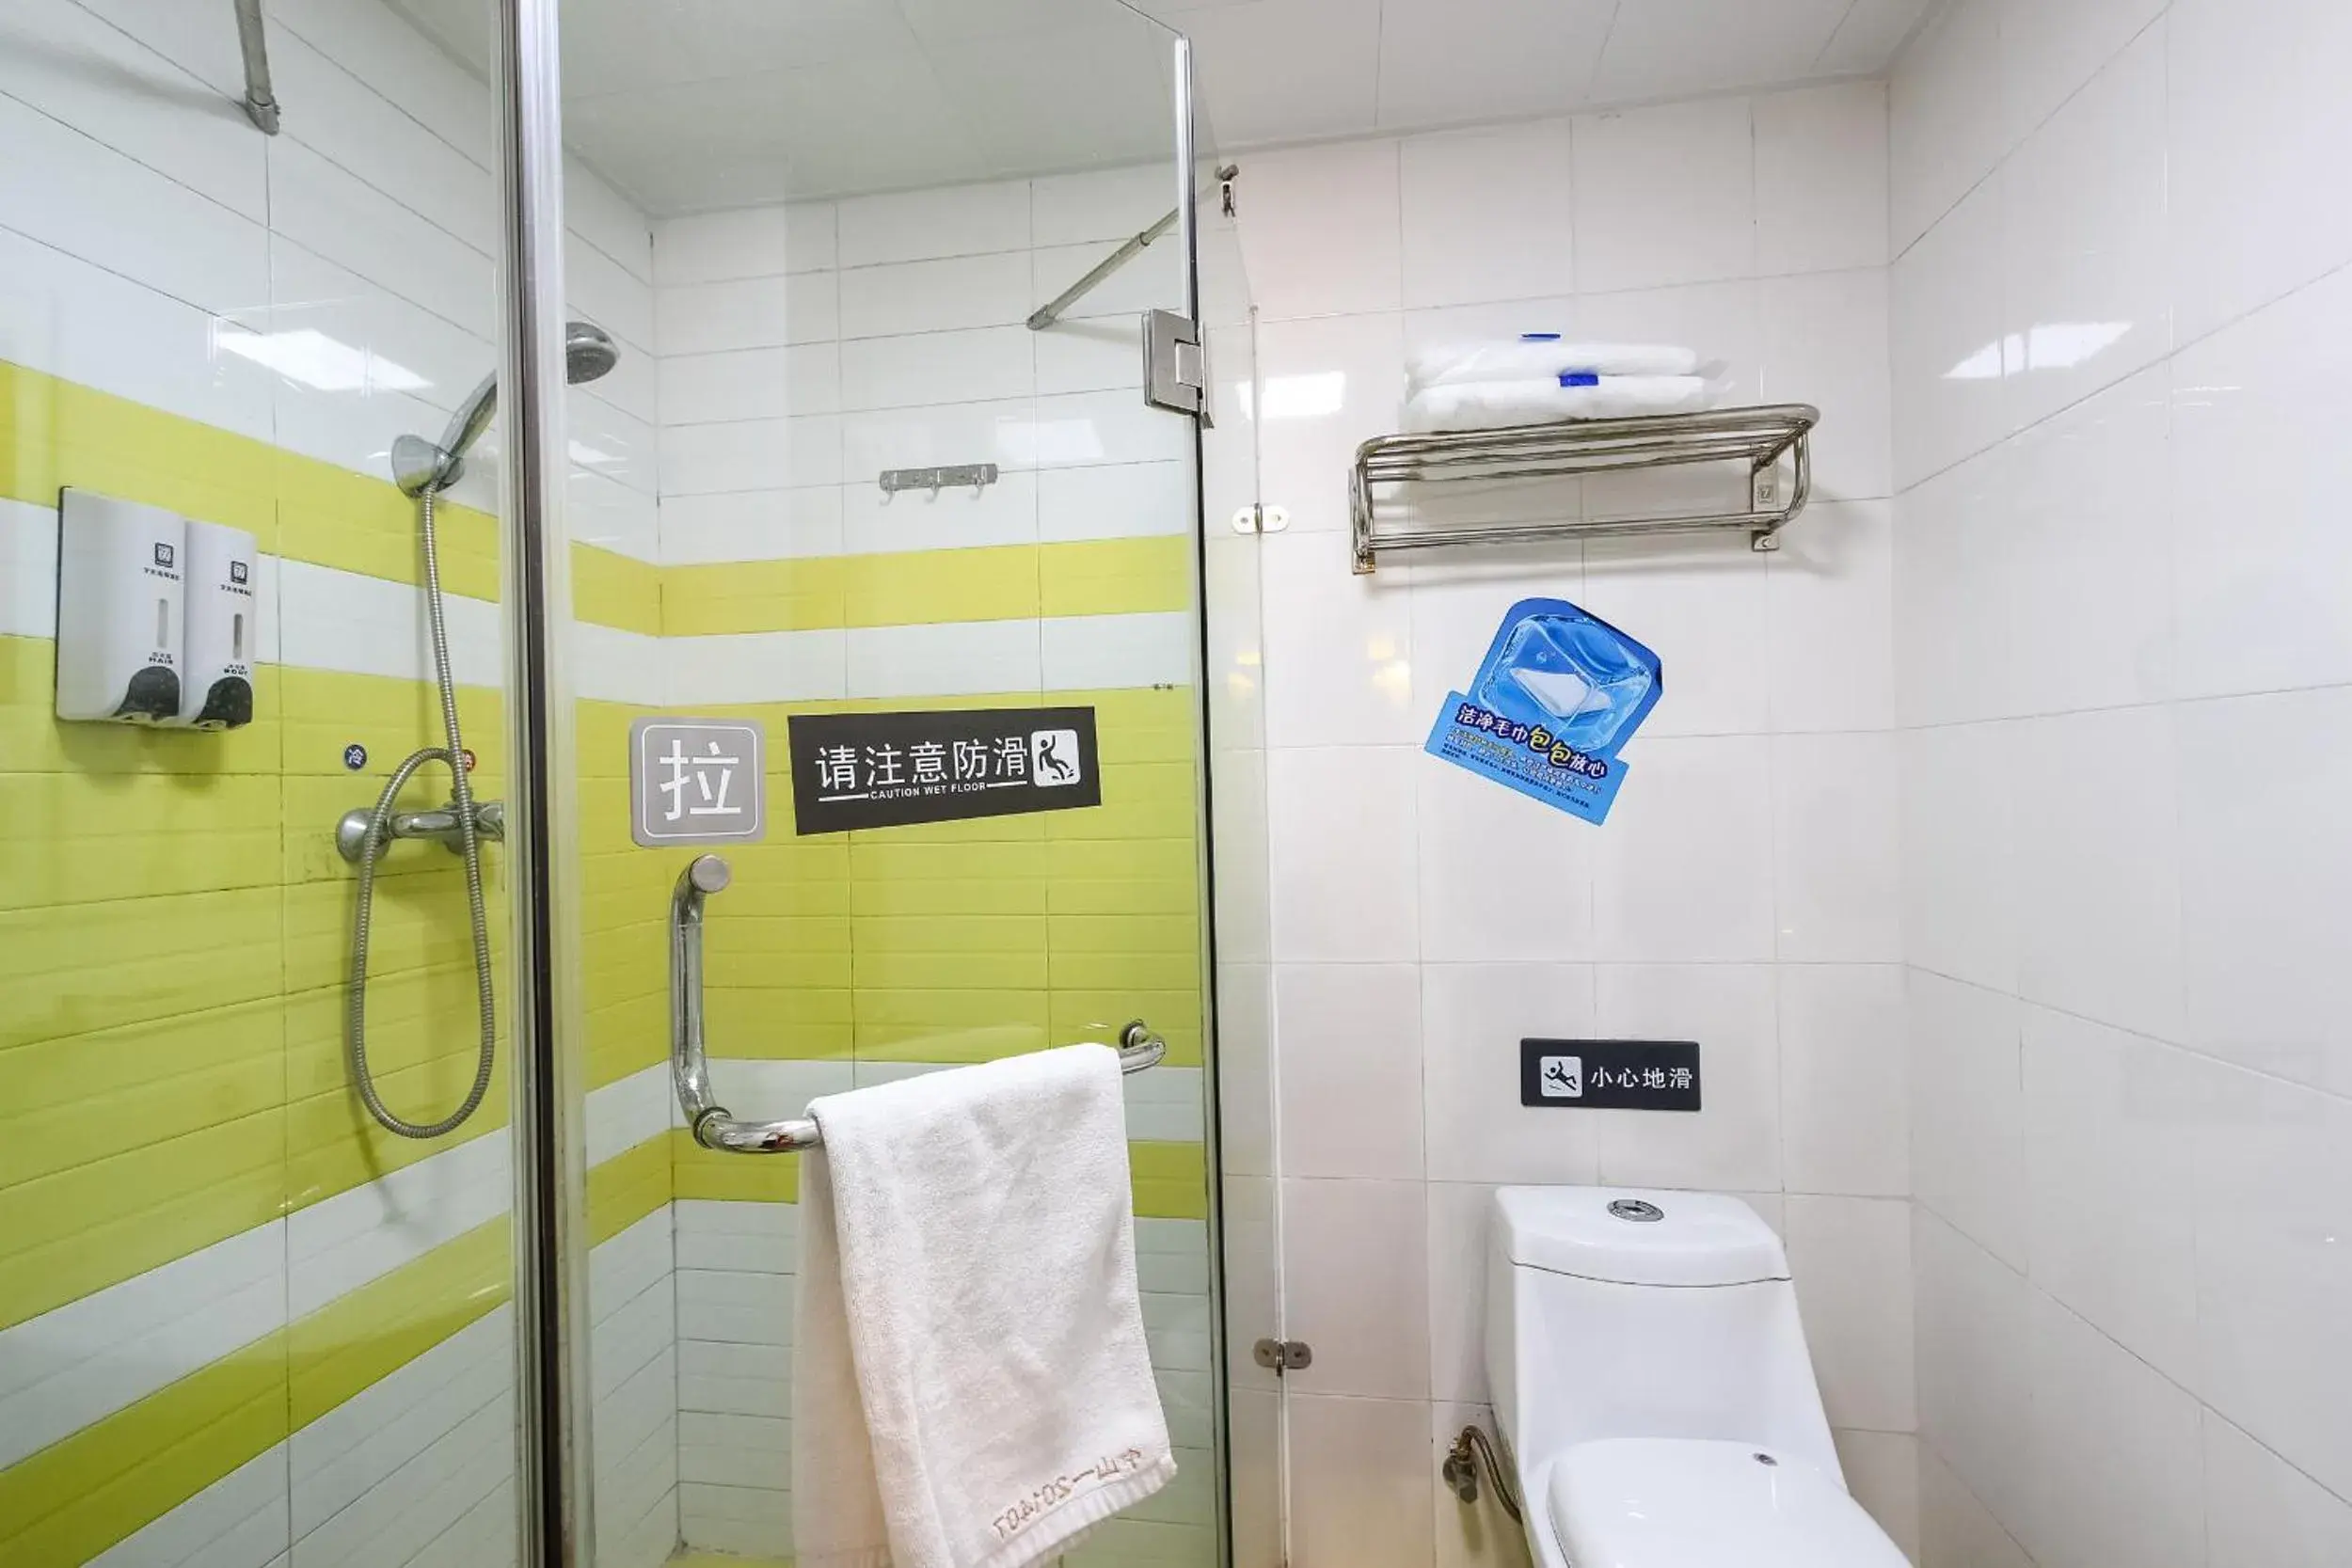 Bathroom in 7 Days Inn Guangzhou Zhongshan 1st Overpass Branch